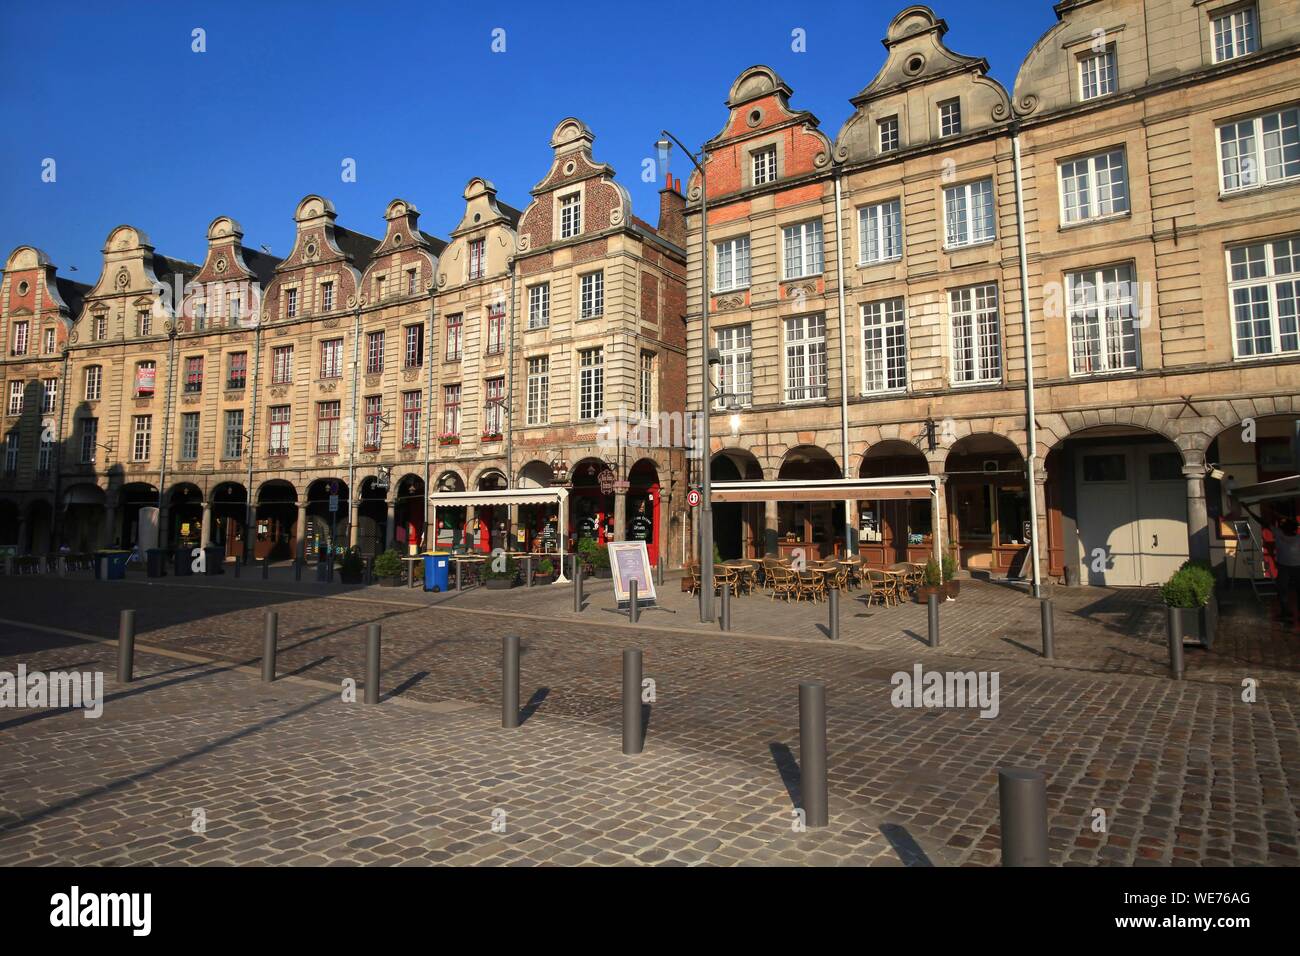 La France, Pas de Calais, Arras, Grand Place, façades de la maisons typiques de la Grand Place Banque D'Images